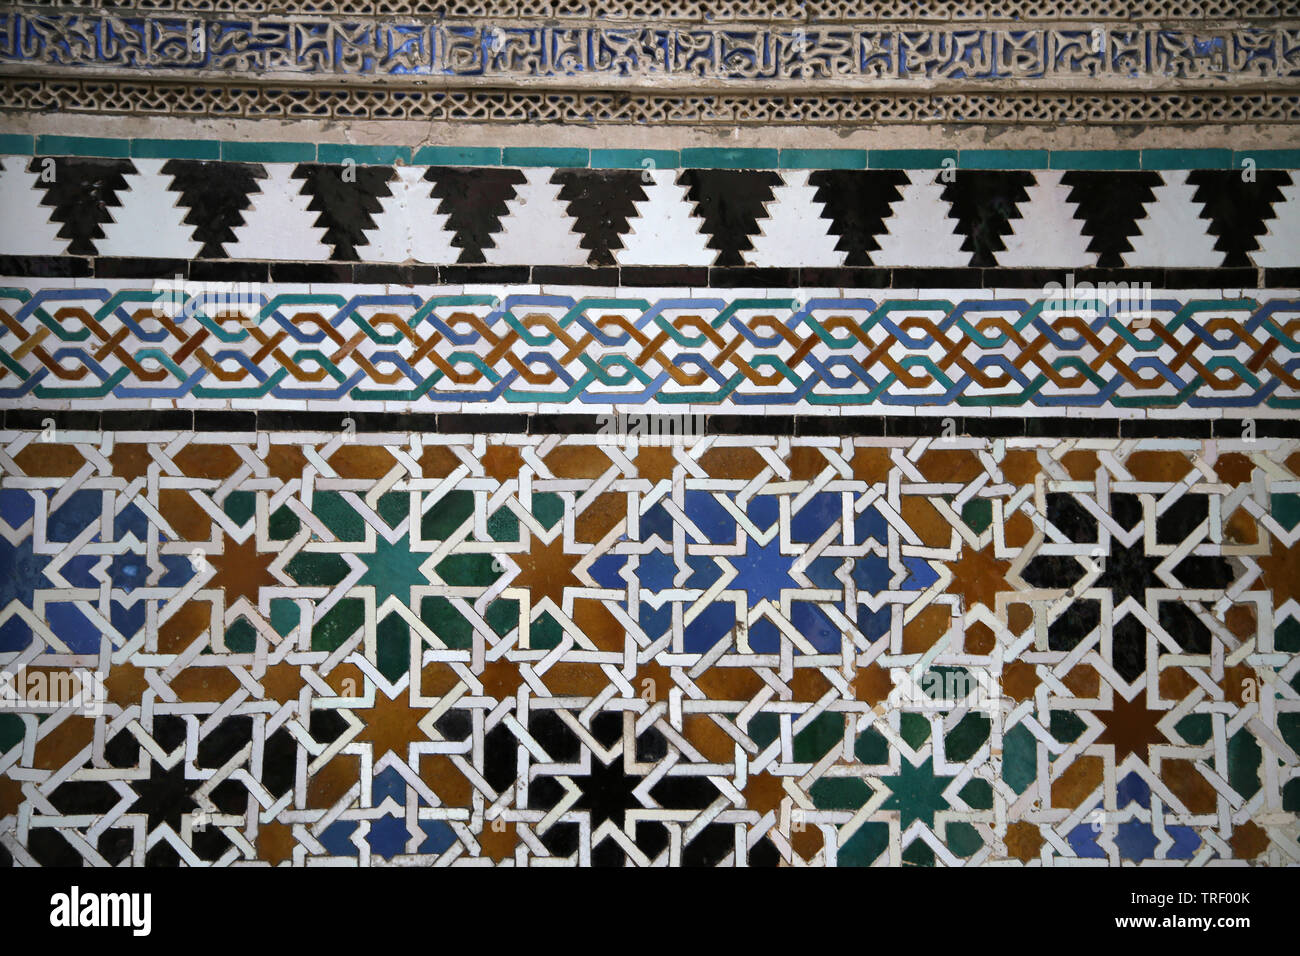 Spanien. Sevilla. Royal Alcazar. Geometrische Muster auf Keramikfliesen. Stockfoto